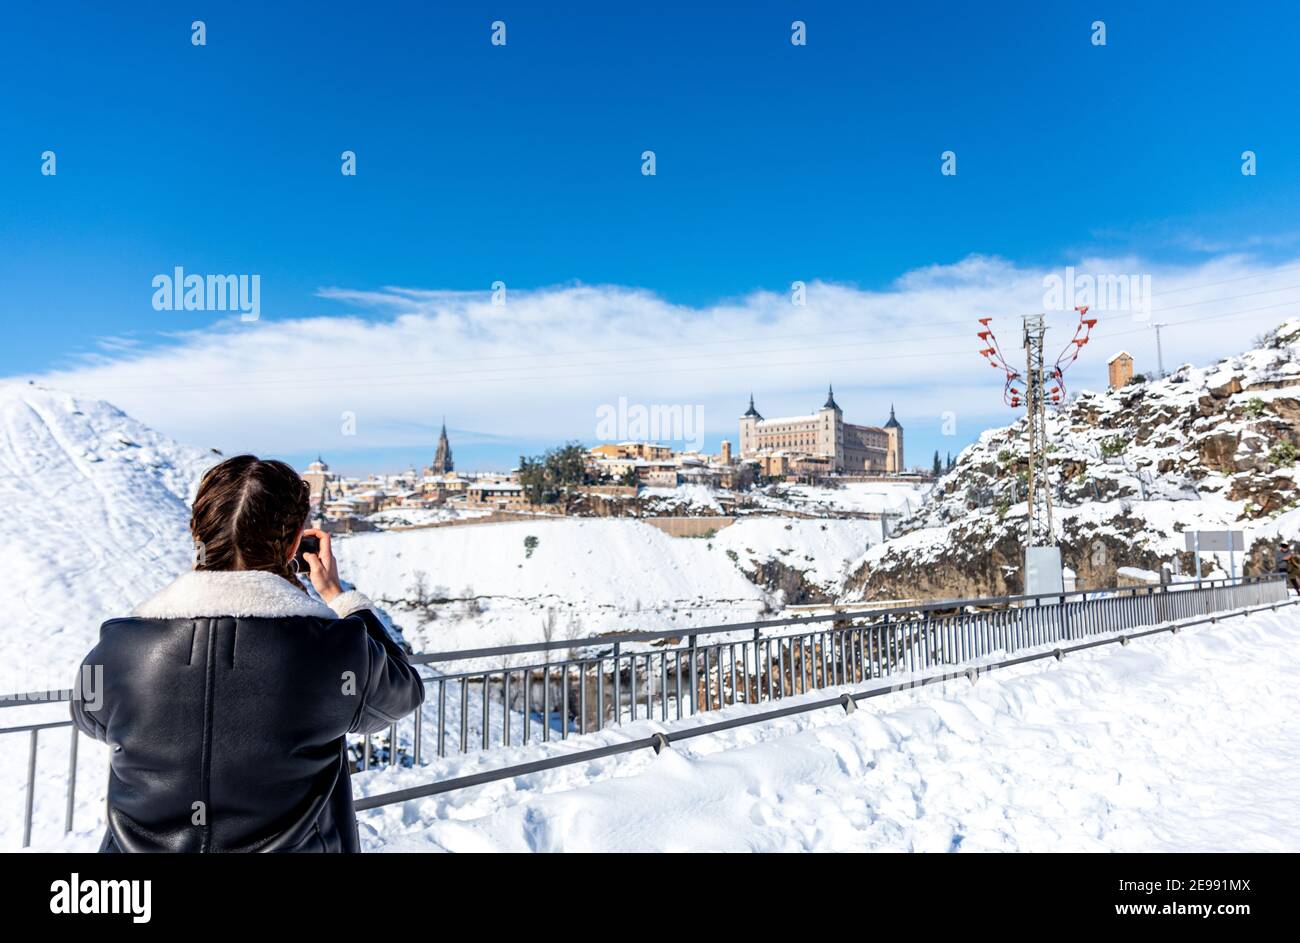 Mujer rubia con trenzas haciendo una foto en la ciudad de Toledo. Paisaje nevado de fondo. Foto de stock